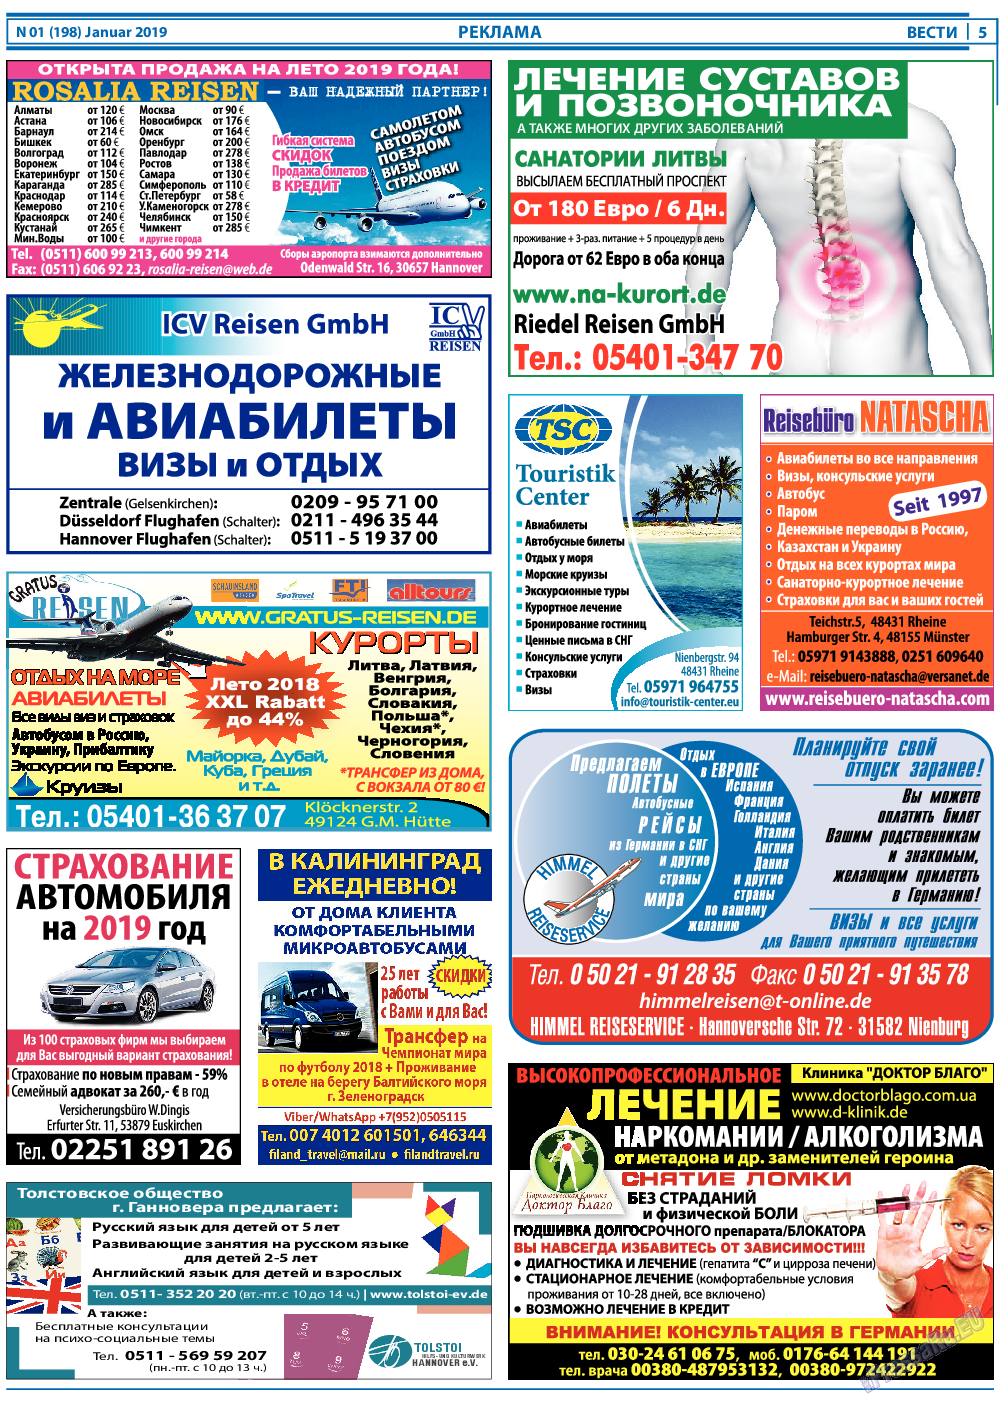 Вести, газета. 2019 №1 стр.5